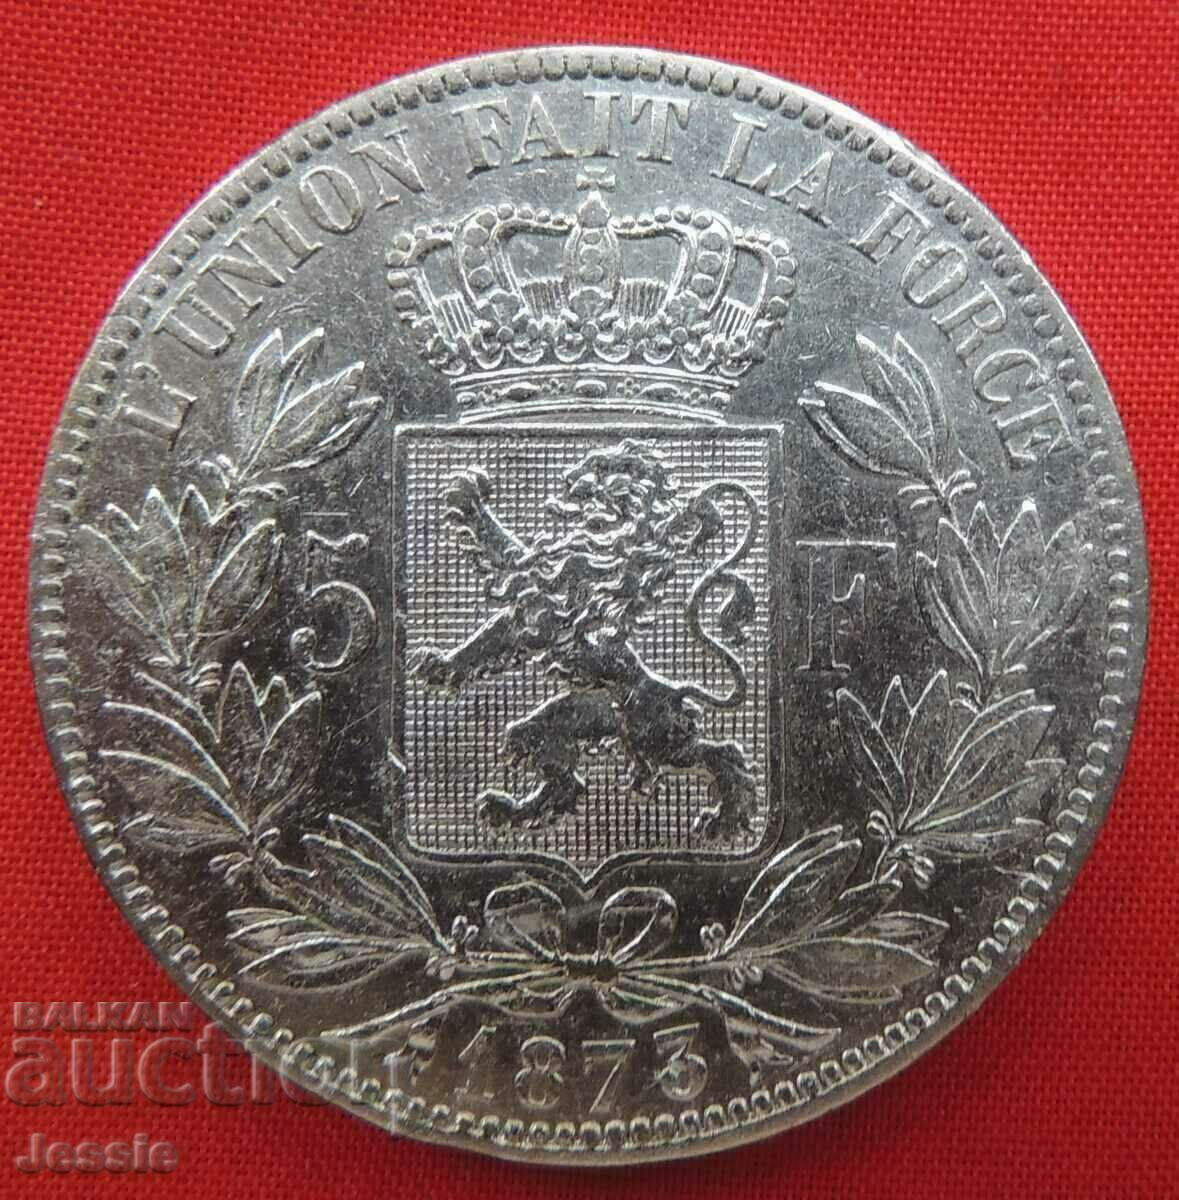 5 Francs 1873 Belgium Silver